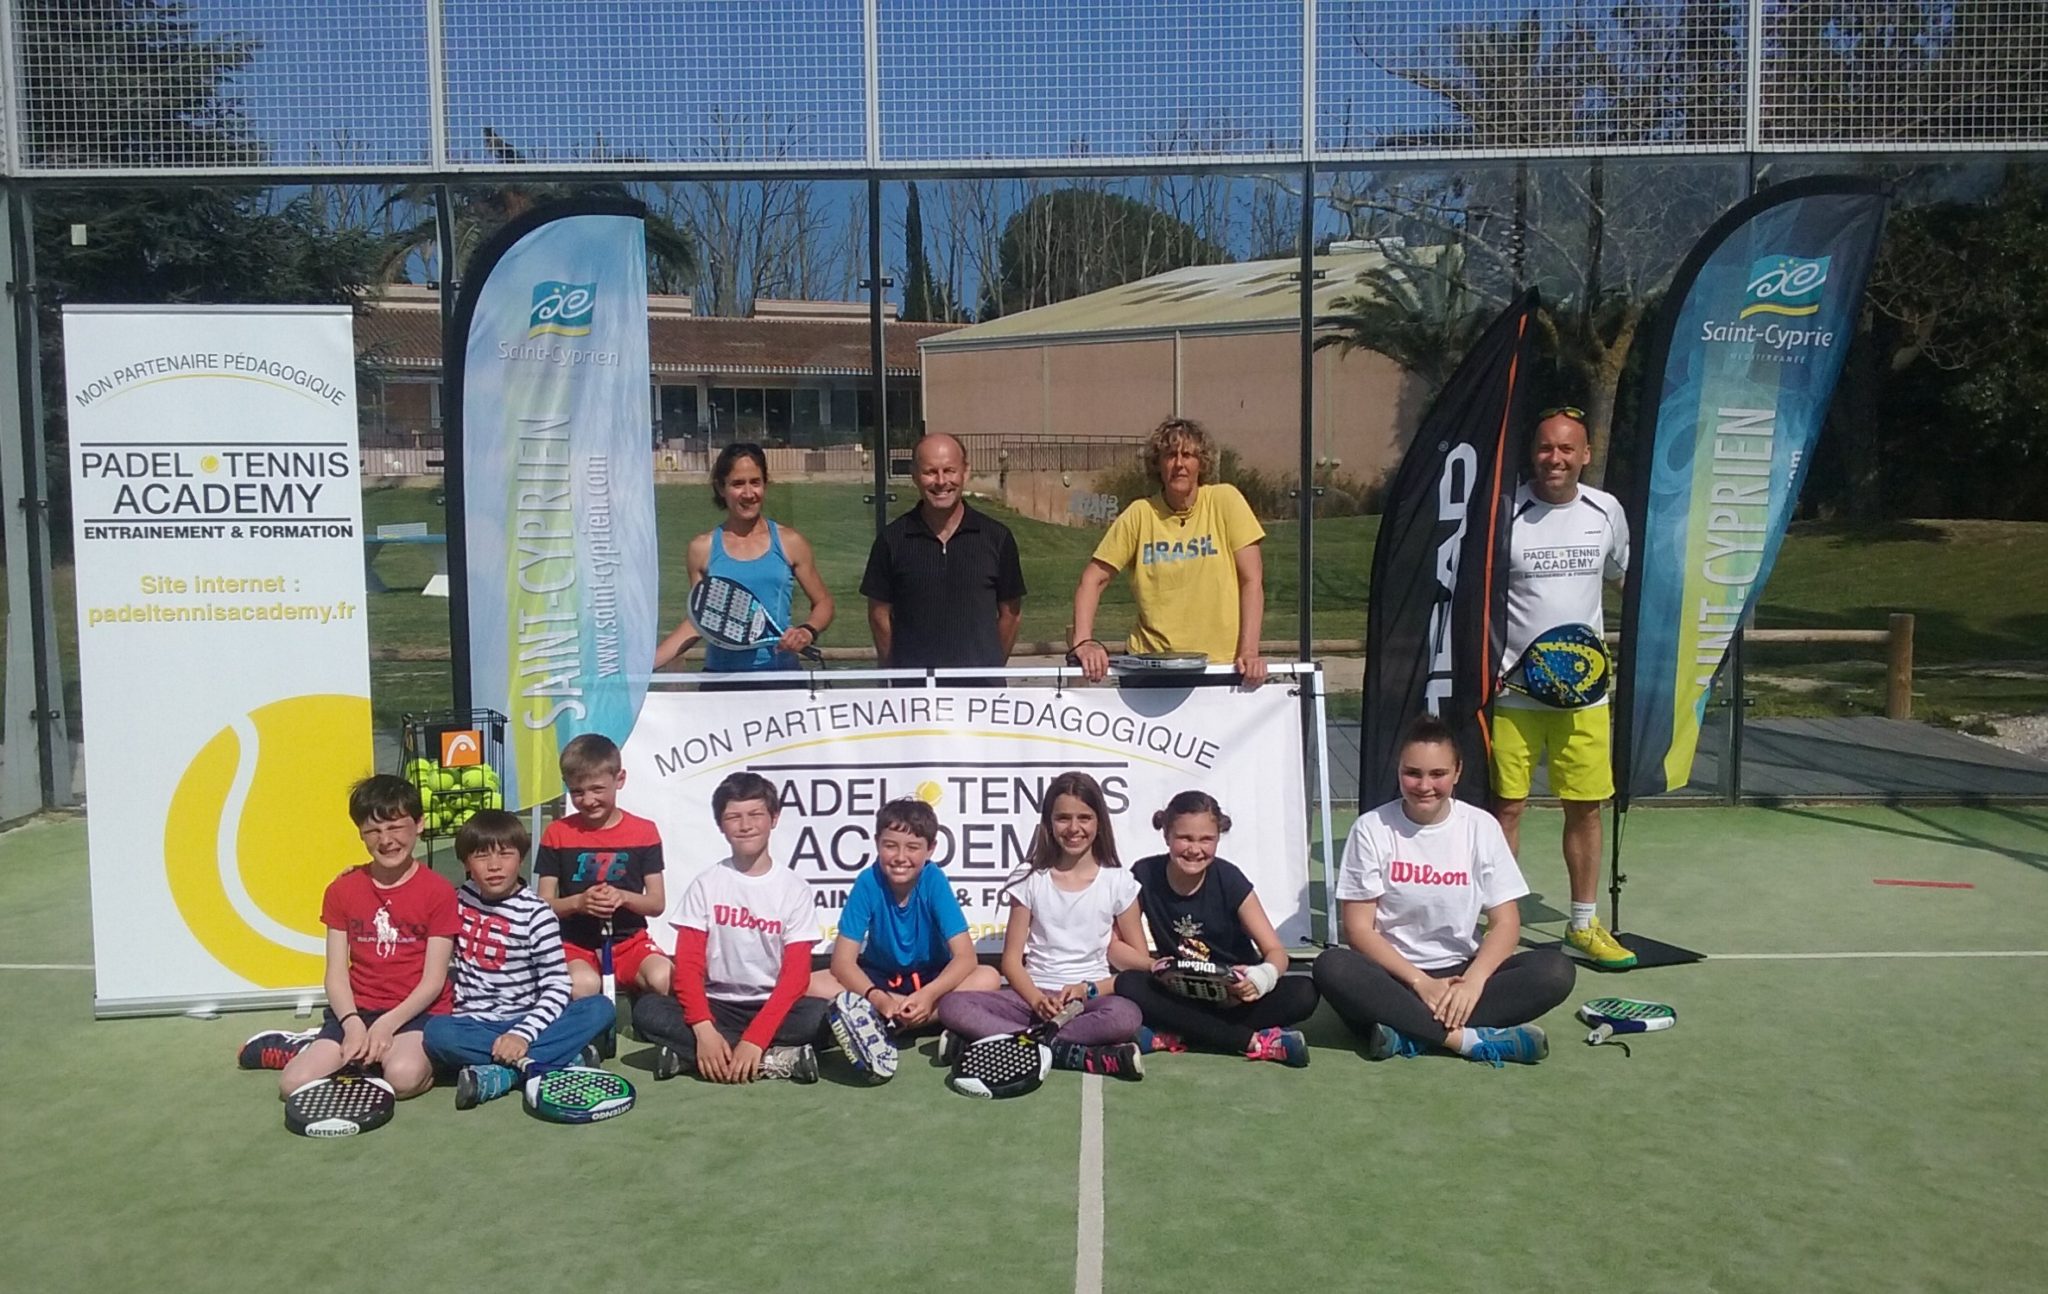 Saint Cyprien y Tarascon con Padel Tennis Academy